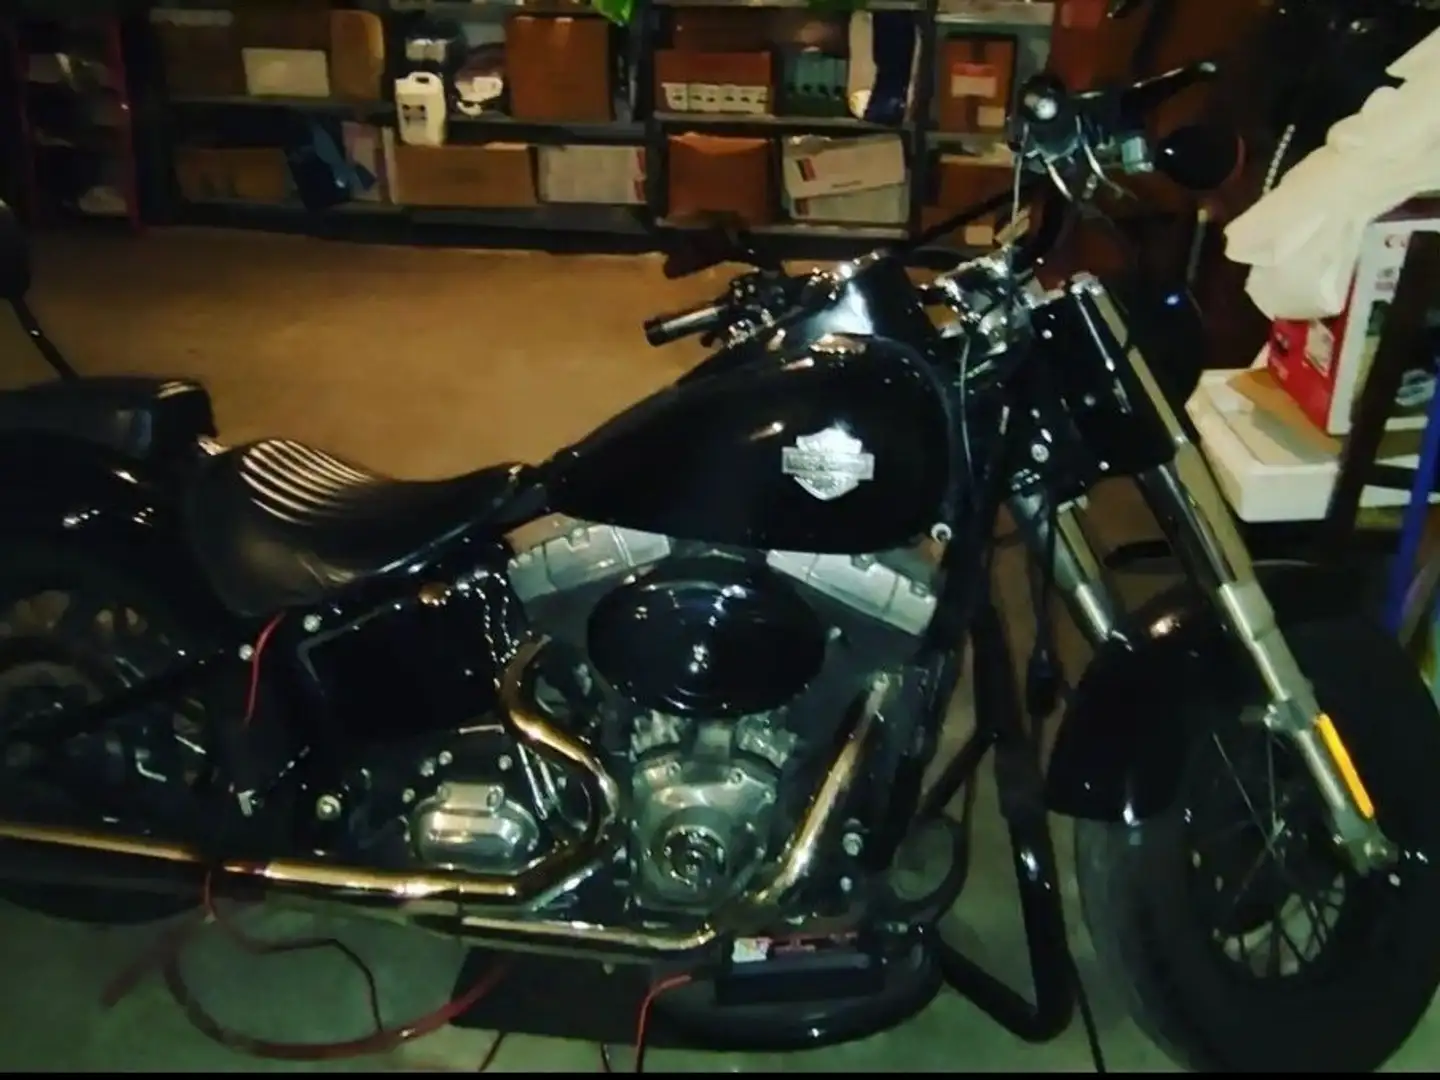 Harley-Davidson Softail Slim Black - 2